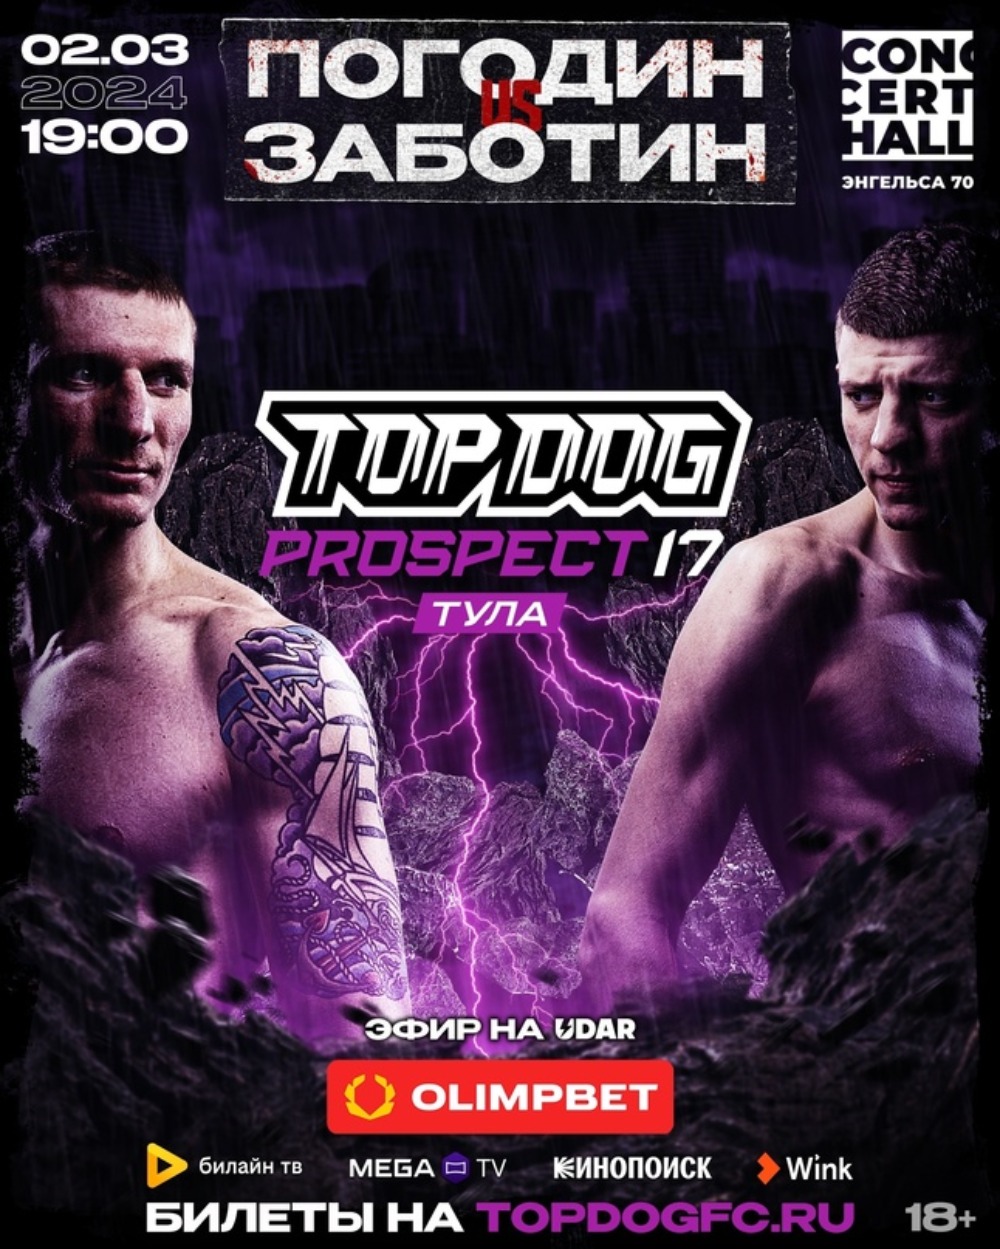 Top Dog: Prospect 17 в Туле 2 марта, Денис Погодин – Валера Заботин